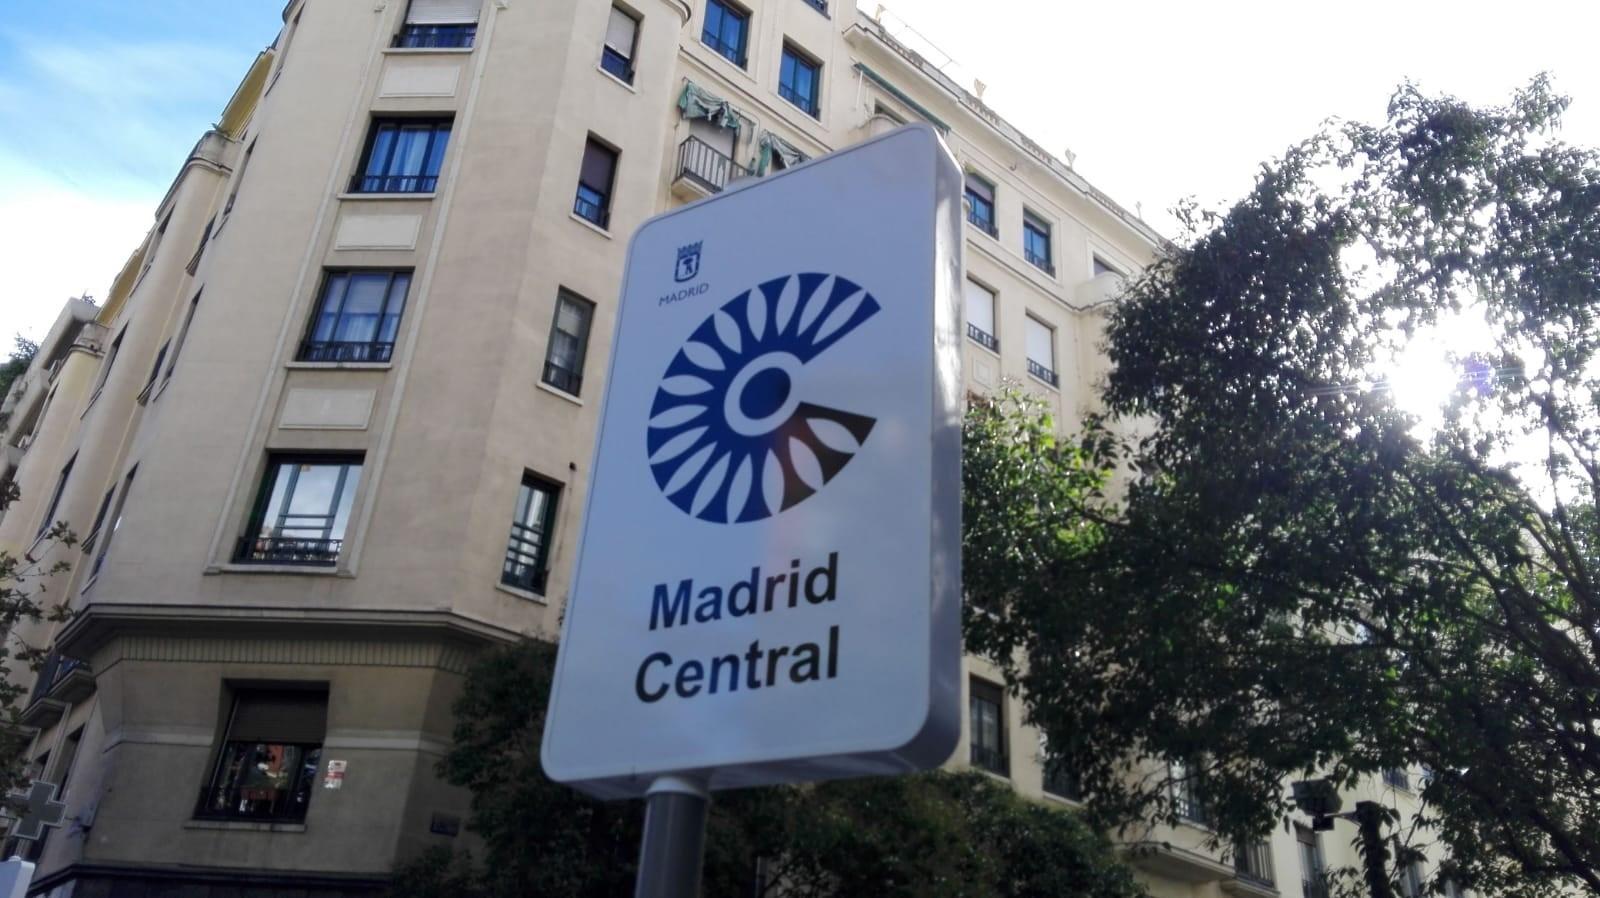 Madrid Central, el proyecto estrella de Manuela Carmena 